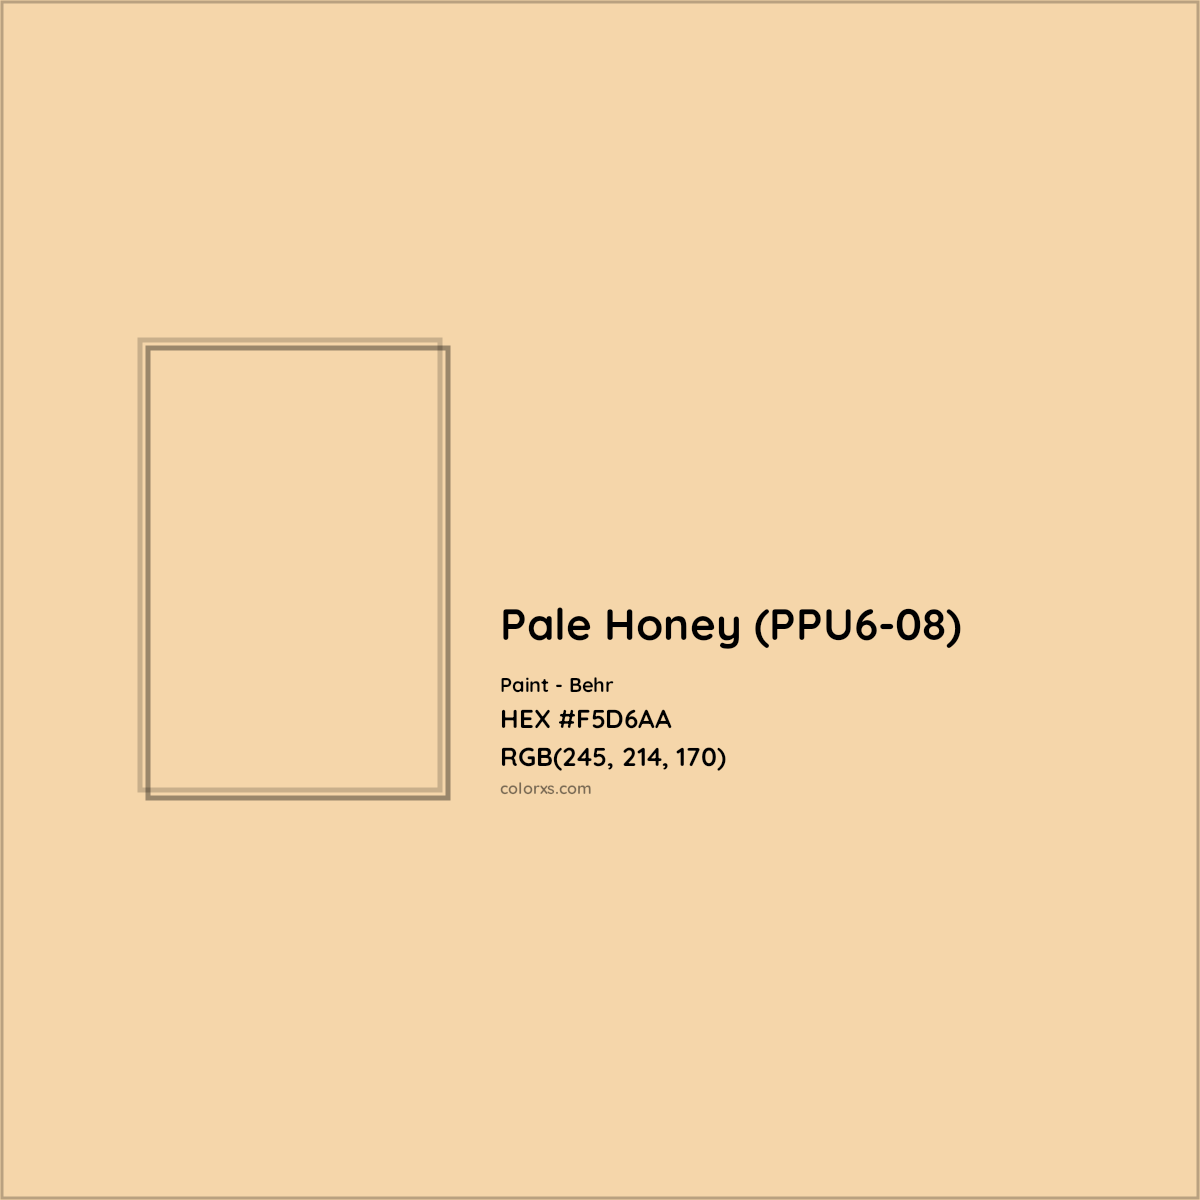 HEX #F5D6AA Pale Honey (PPU6-08) Paint Behr - Color Code